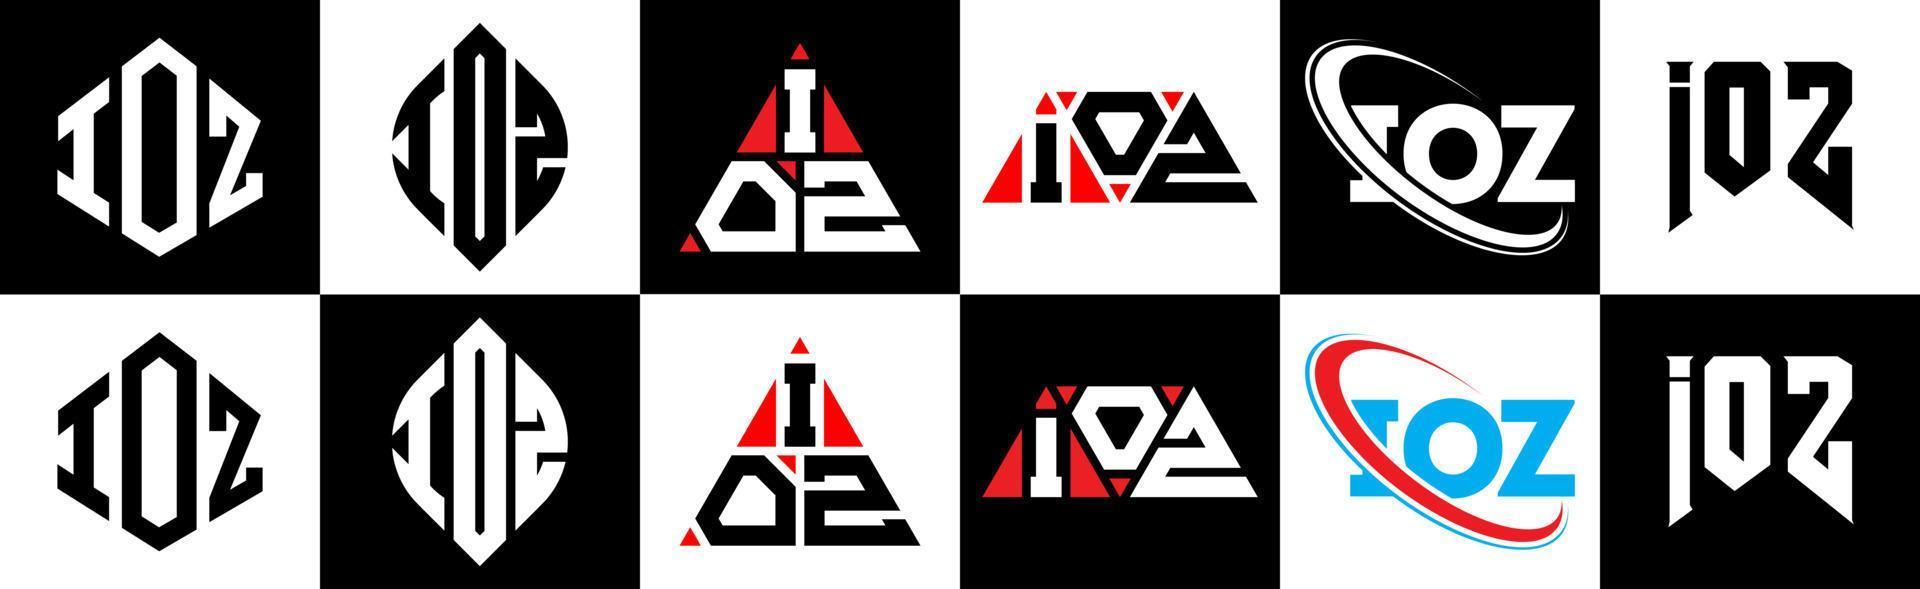 ioz lettera logo design nel sei stile. ioz poligono, cerchio, triangolo, esagono, piatto e semplice stile con nero e bianca colore variazione lettera logo impostato nel uno tavola da disegno. ioz minimalista e classico logo vettore